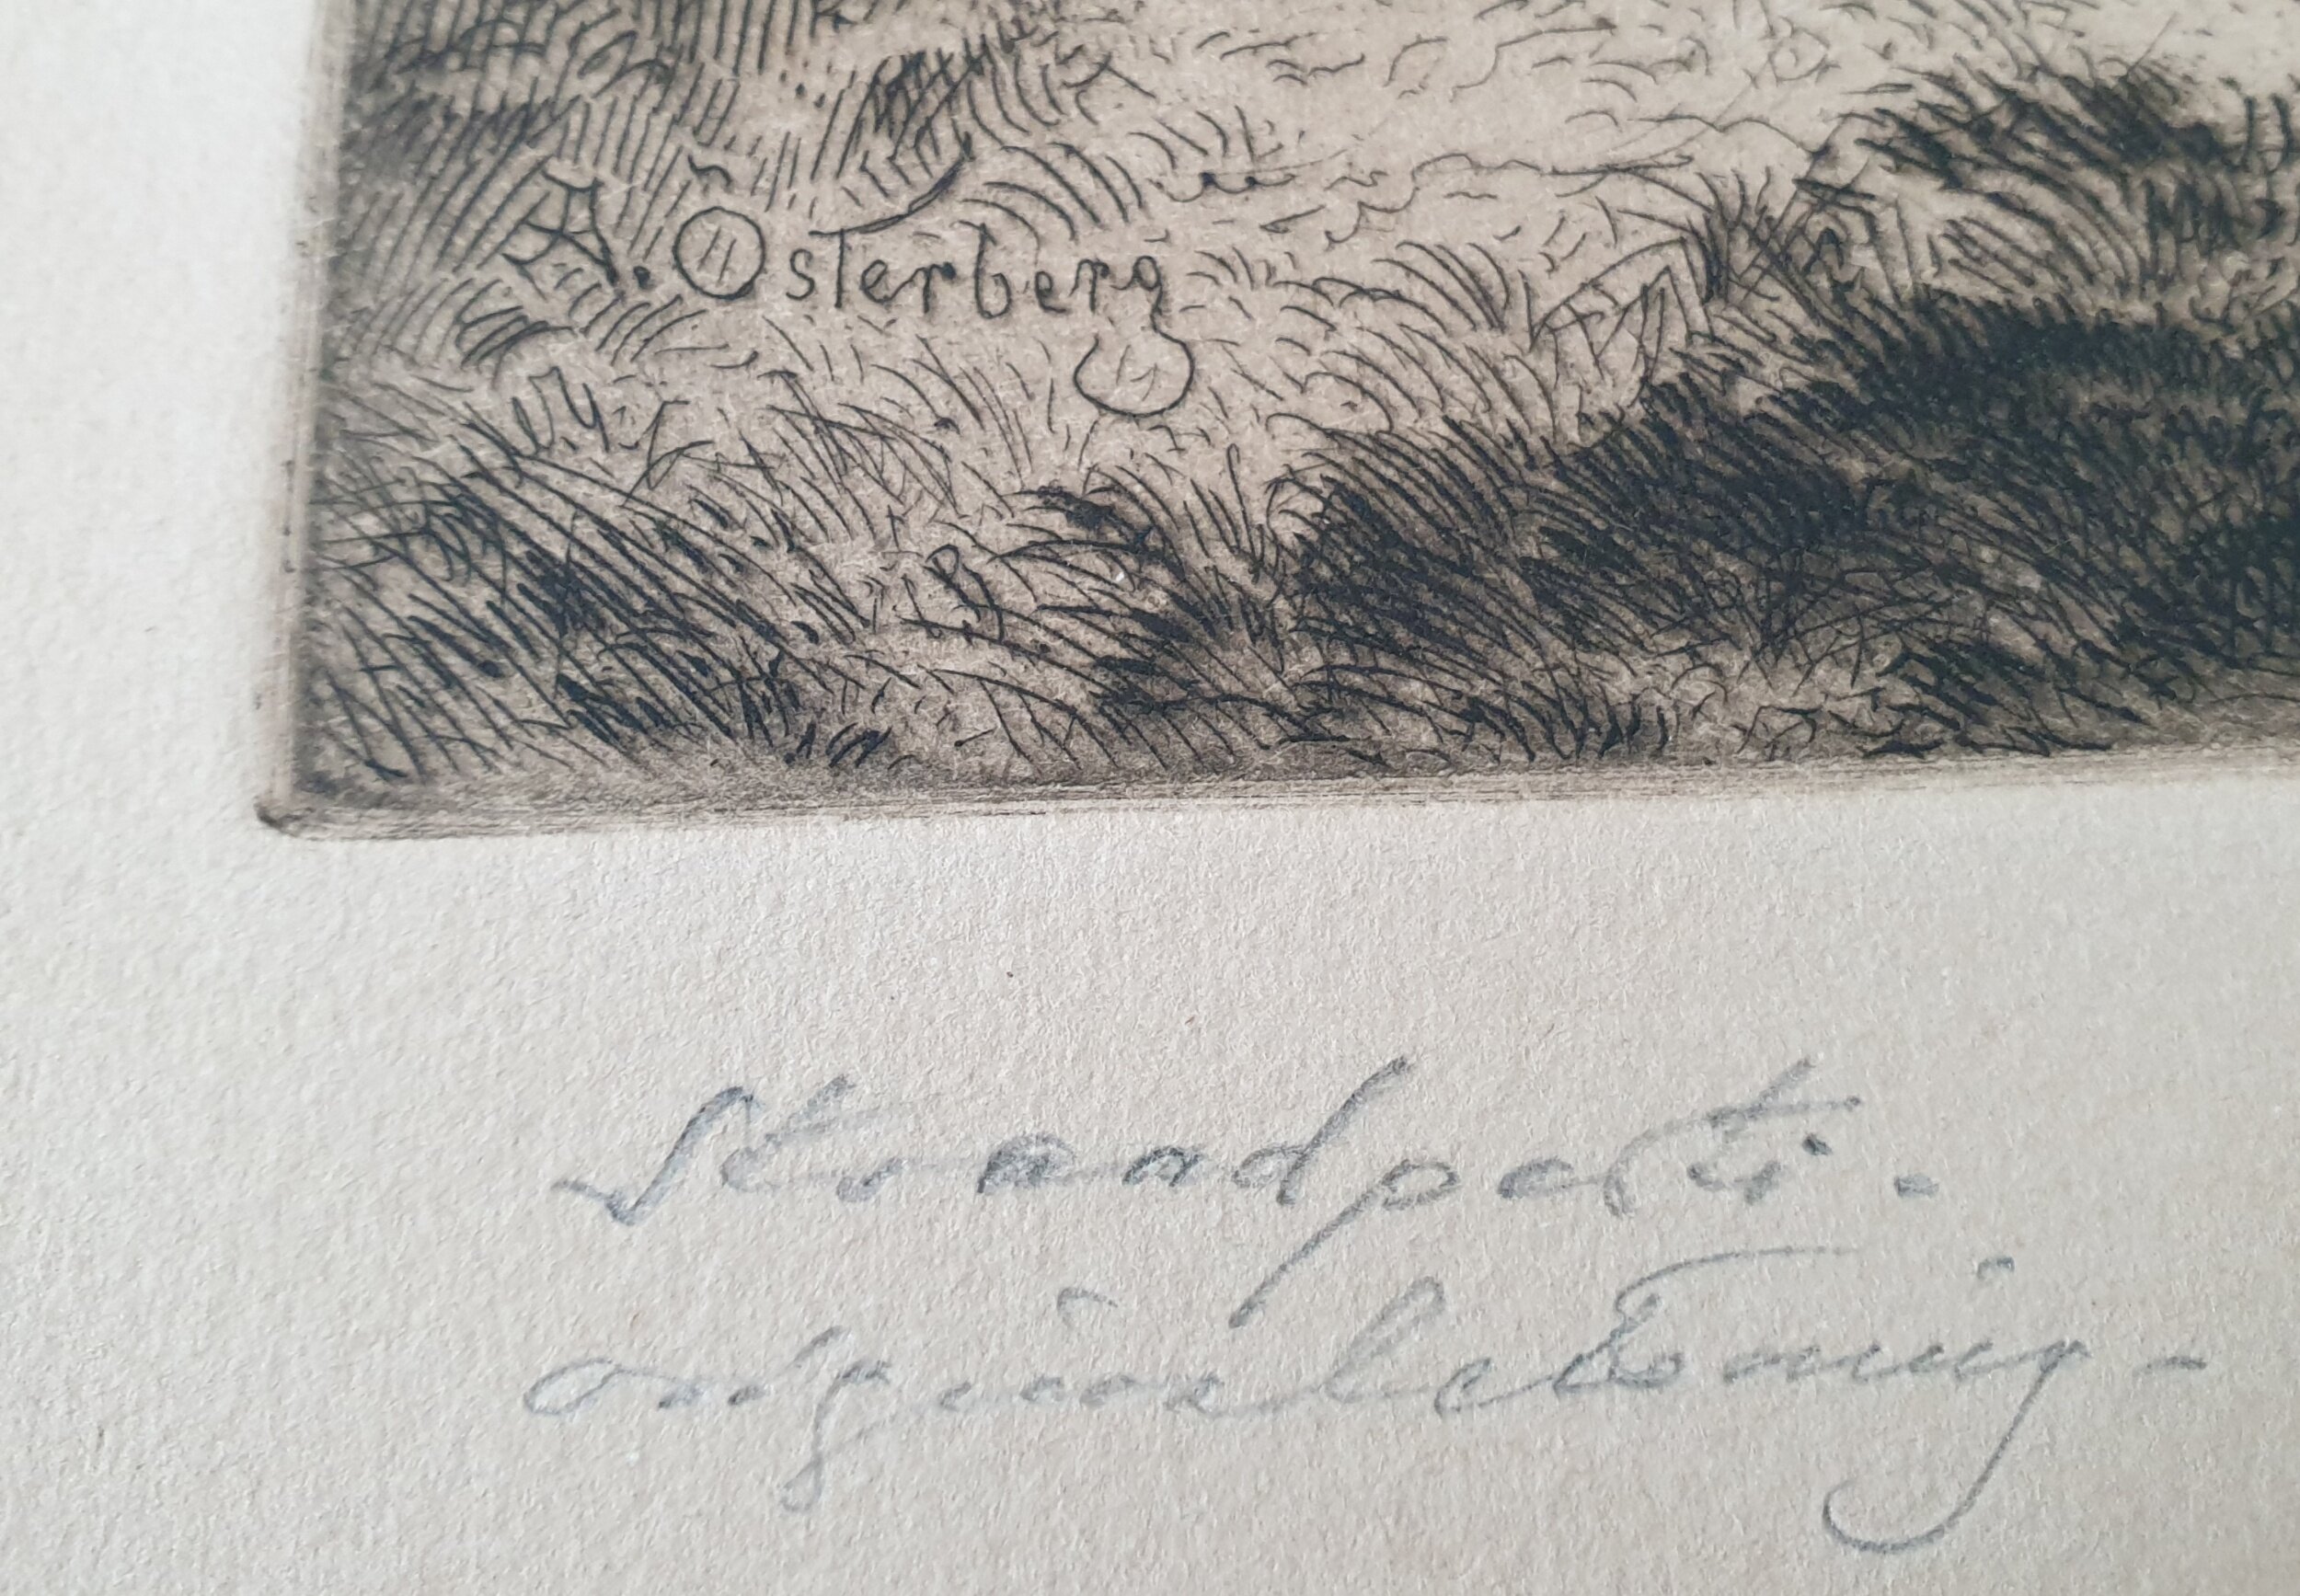  Ruotsalaisen Alex Österbergin etsauksessa on tekijän nimi syövytetty painolaattaan ja teoksen nimi “Strandparti” on sijoitettu kuvan alle vasemmalle.   